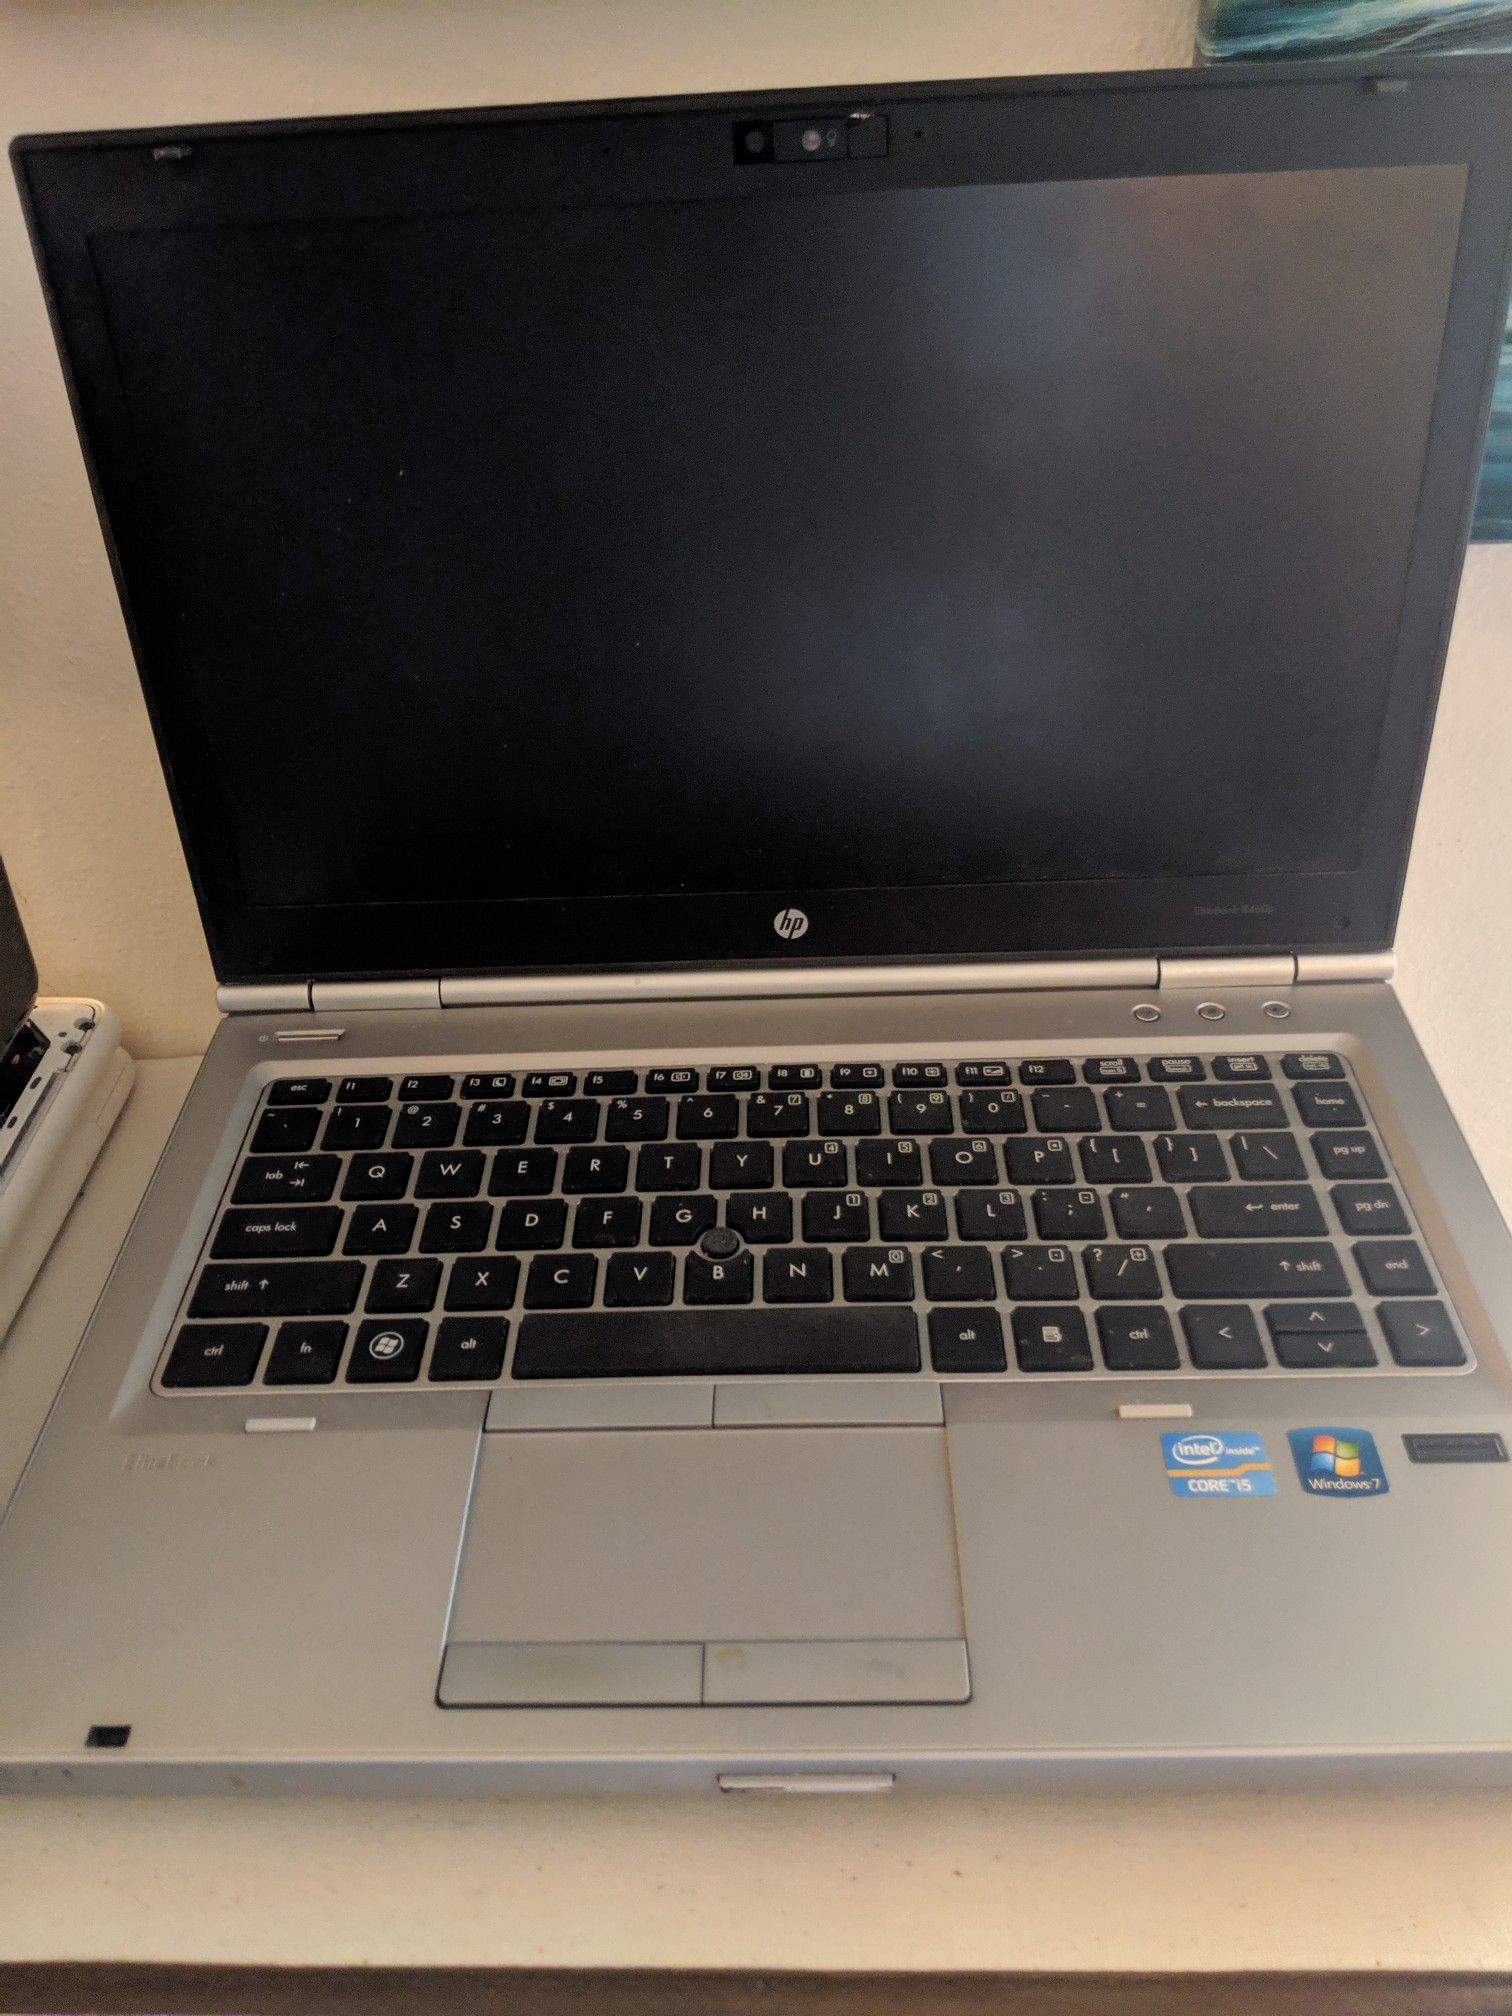 HP EliteBook 8460p i5 @2.30GHZ 4GB RAM 500GB HDD